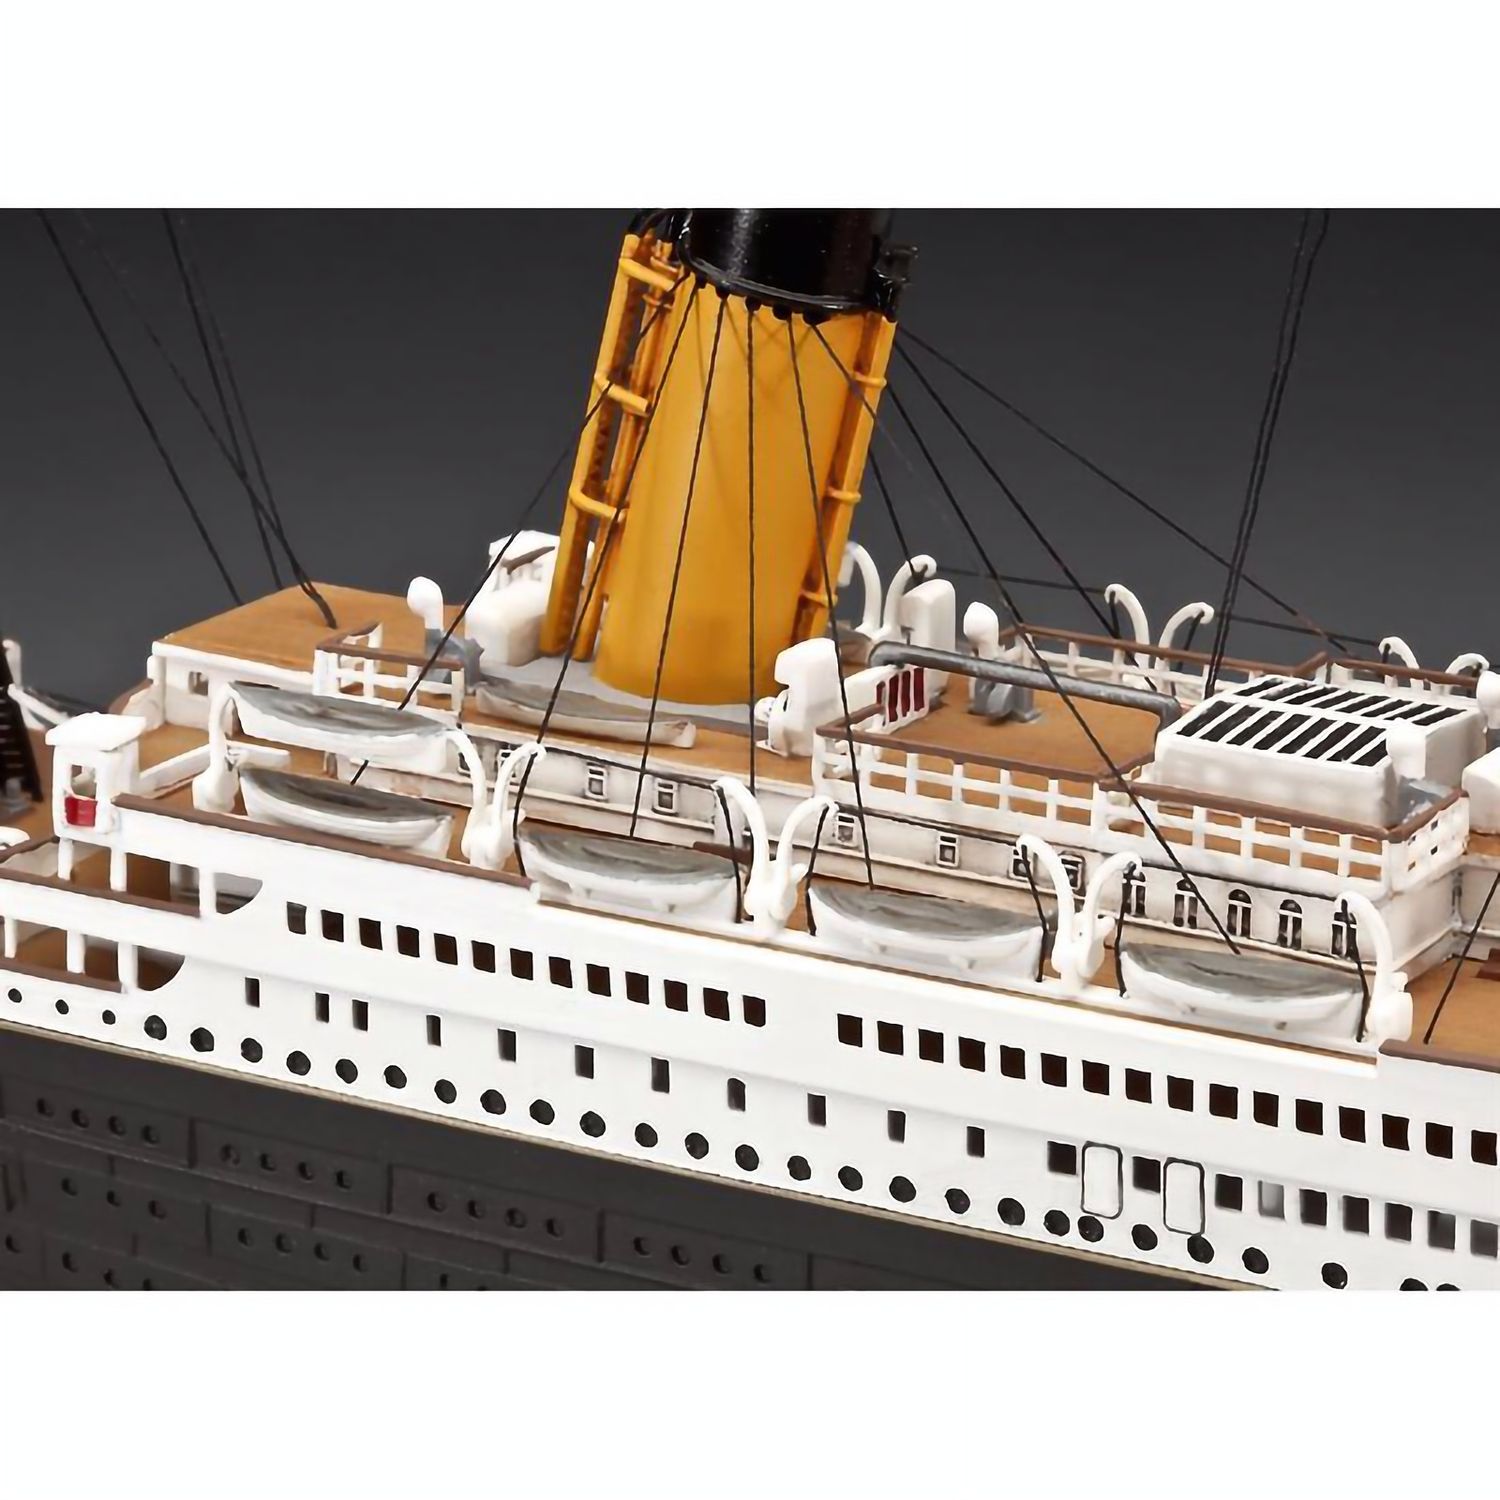 Збірна модель Revell Лайнер Титанік. До 100-річчя побудови, рівень 5, 1:400, 262 деталі (RVL-05715) - фото 4